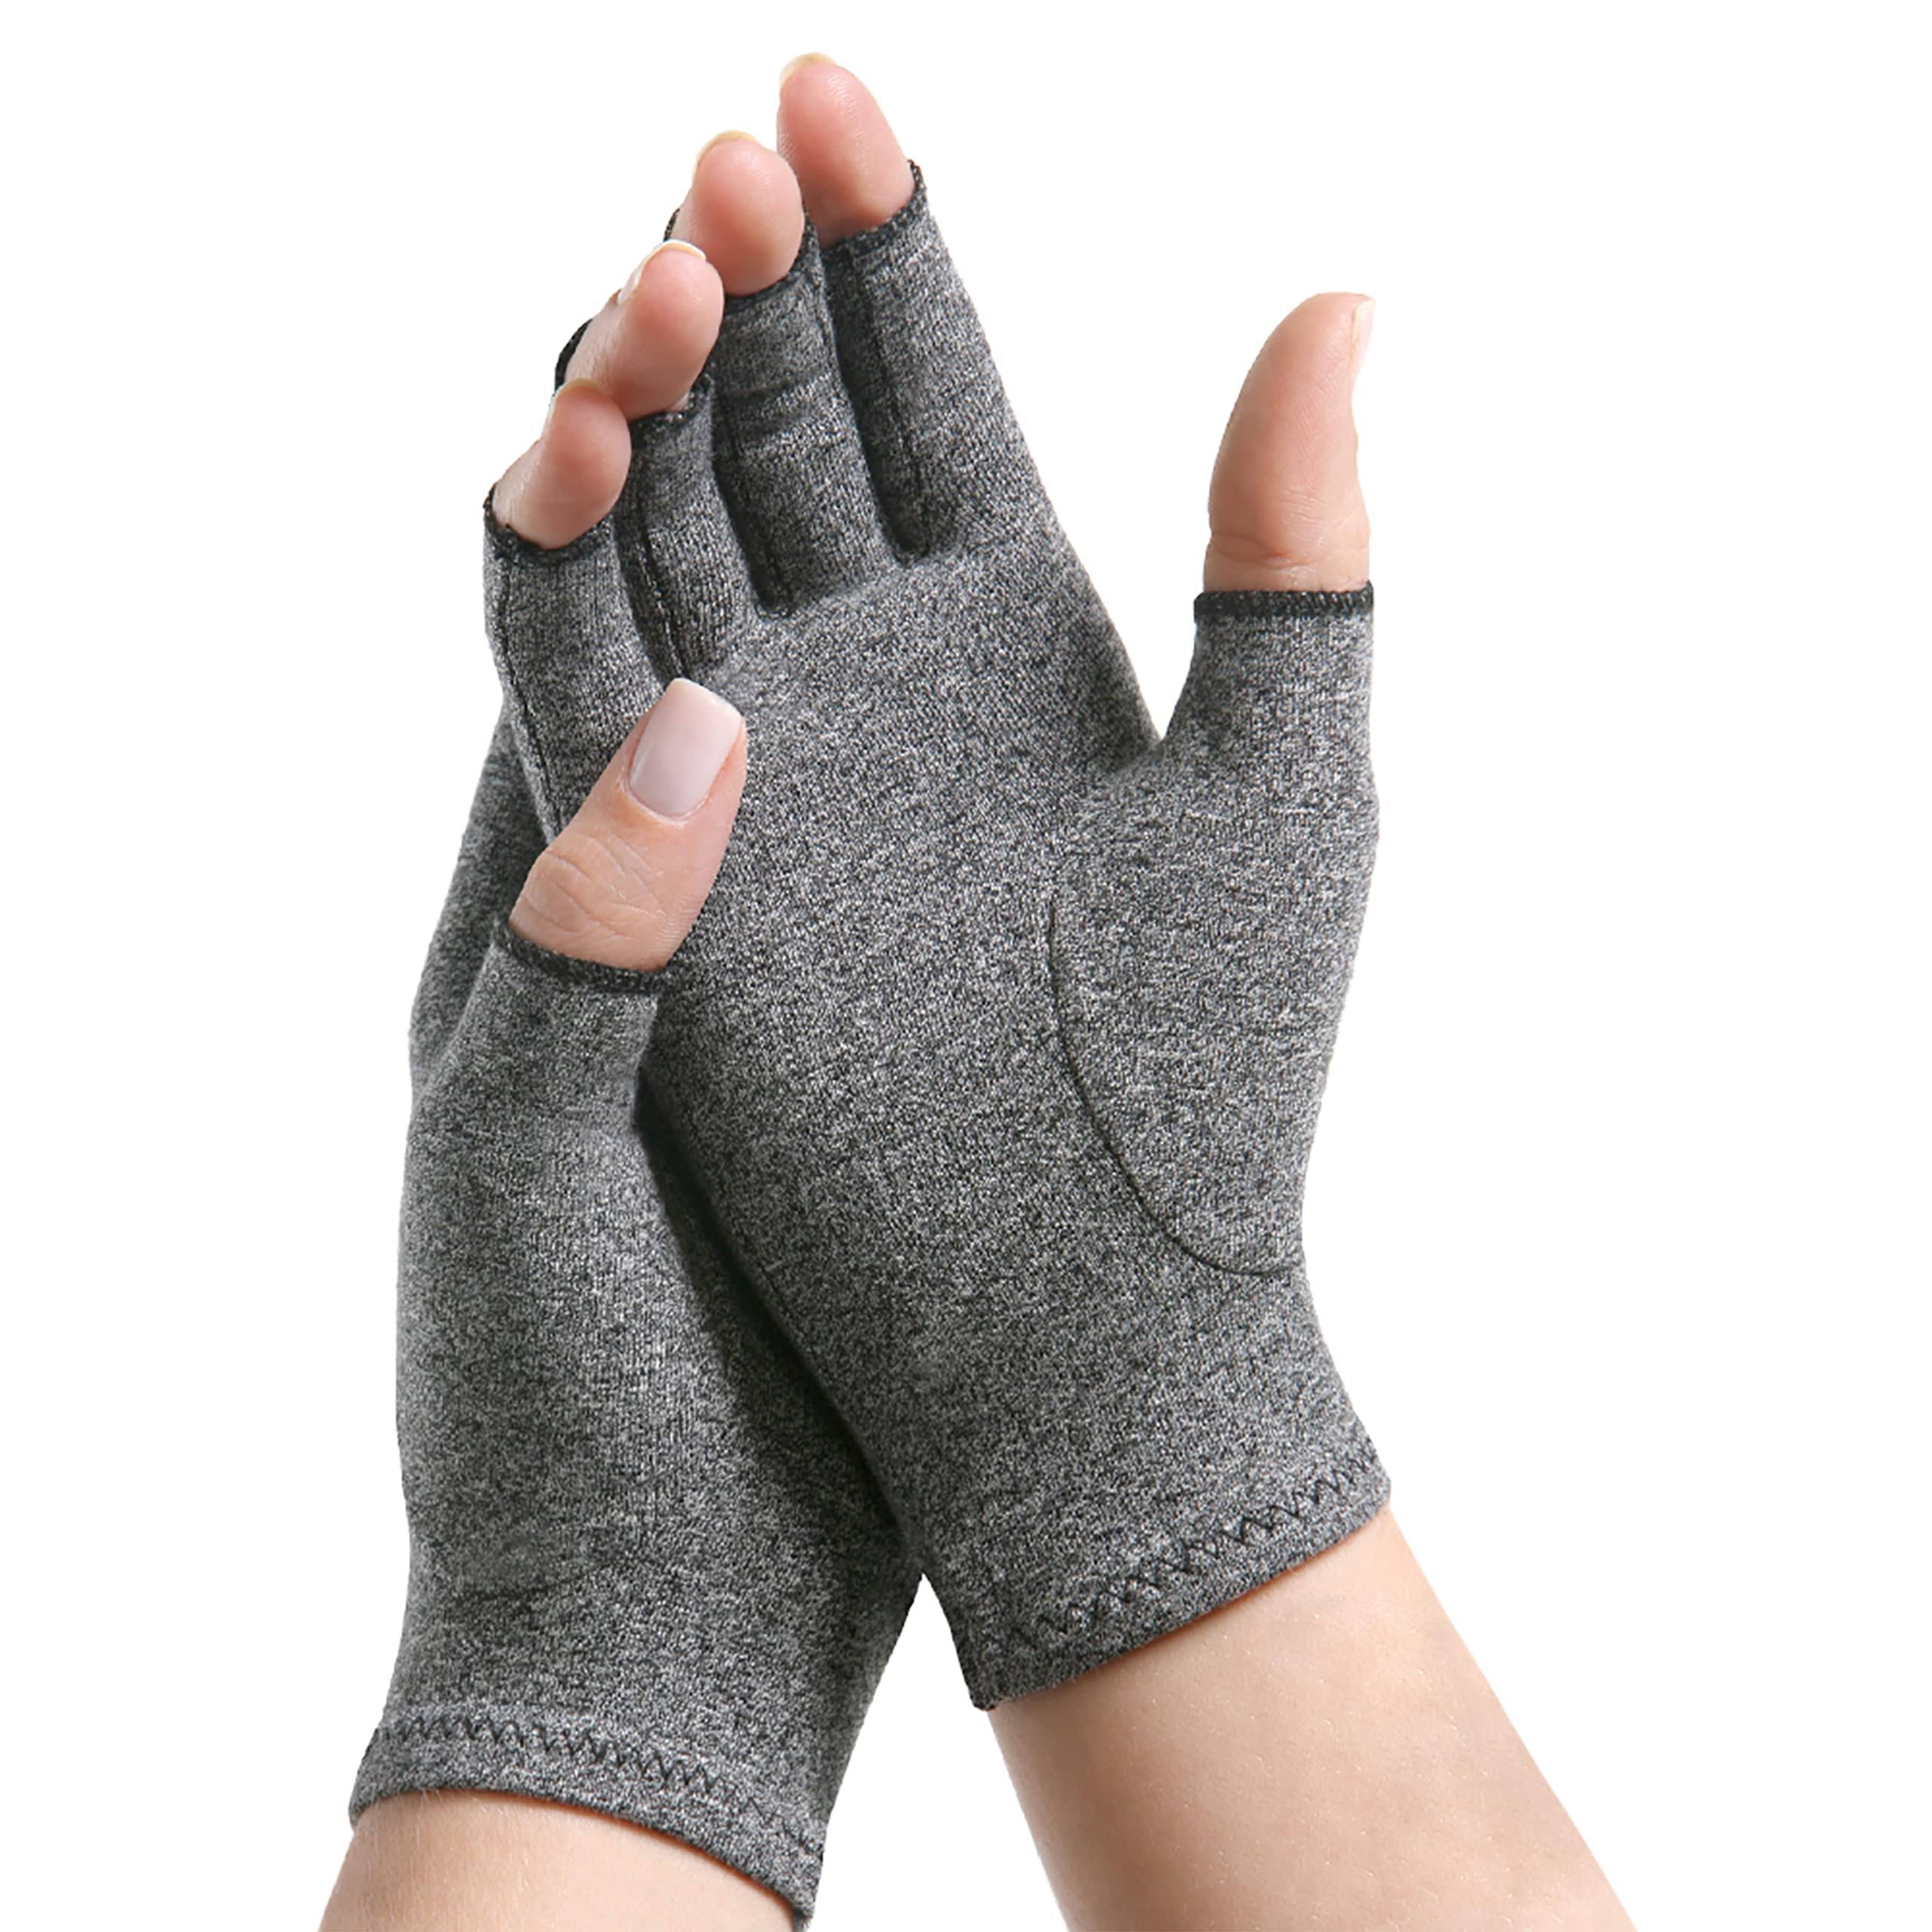 Imak Compression Medium Arthritis Gloves - One Pair, Medium